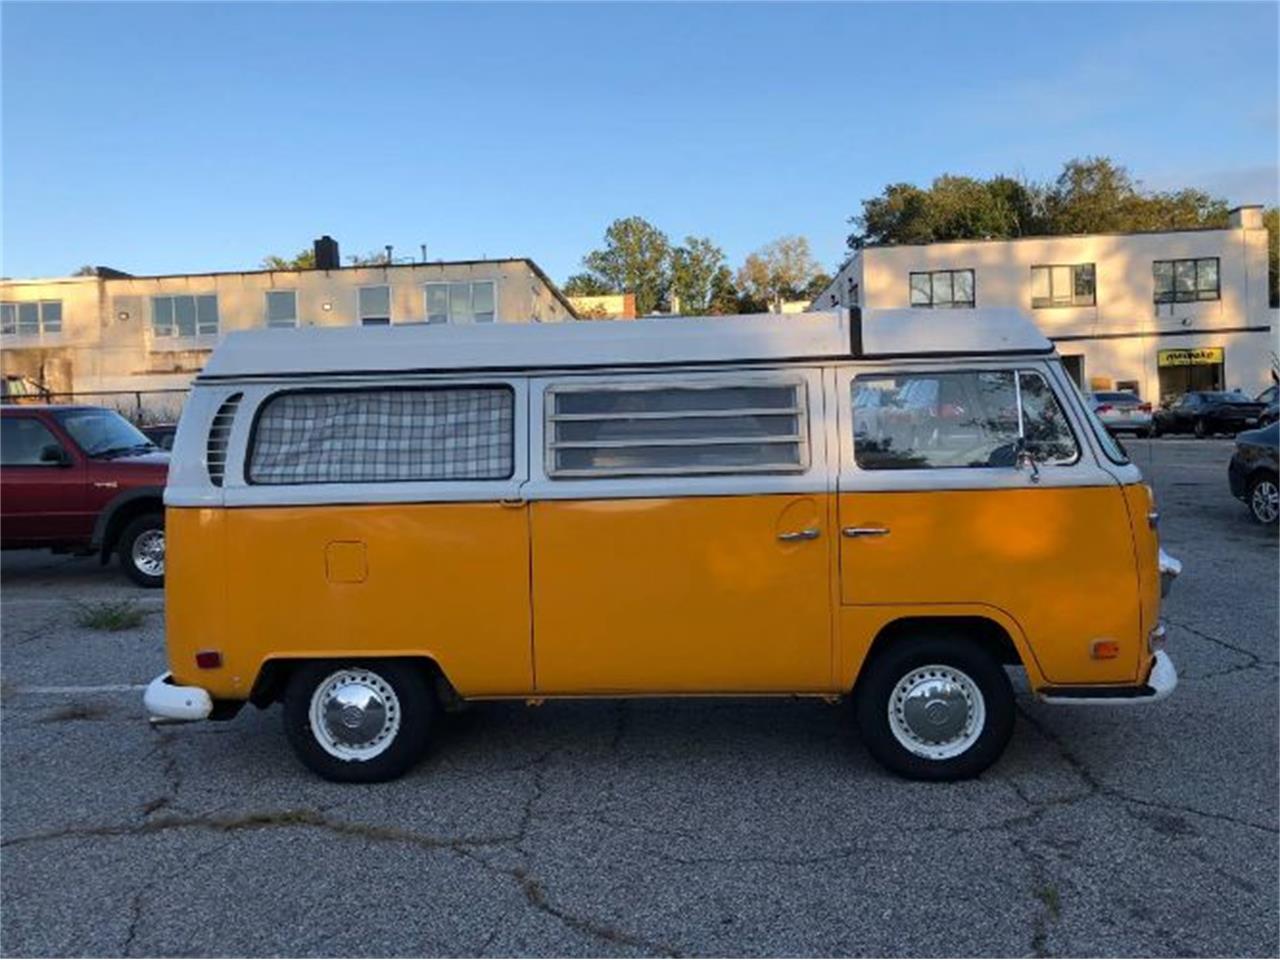 For Sale: 1971 Volkswagen Westfalia Camper in Cadillac, Michigan for sale in Cadillac, MI